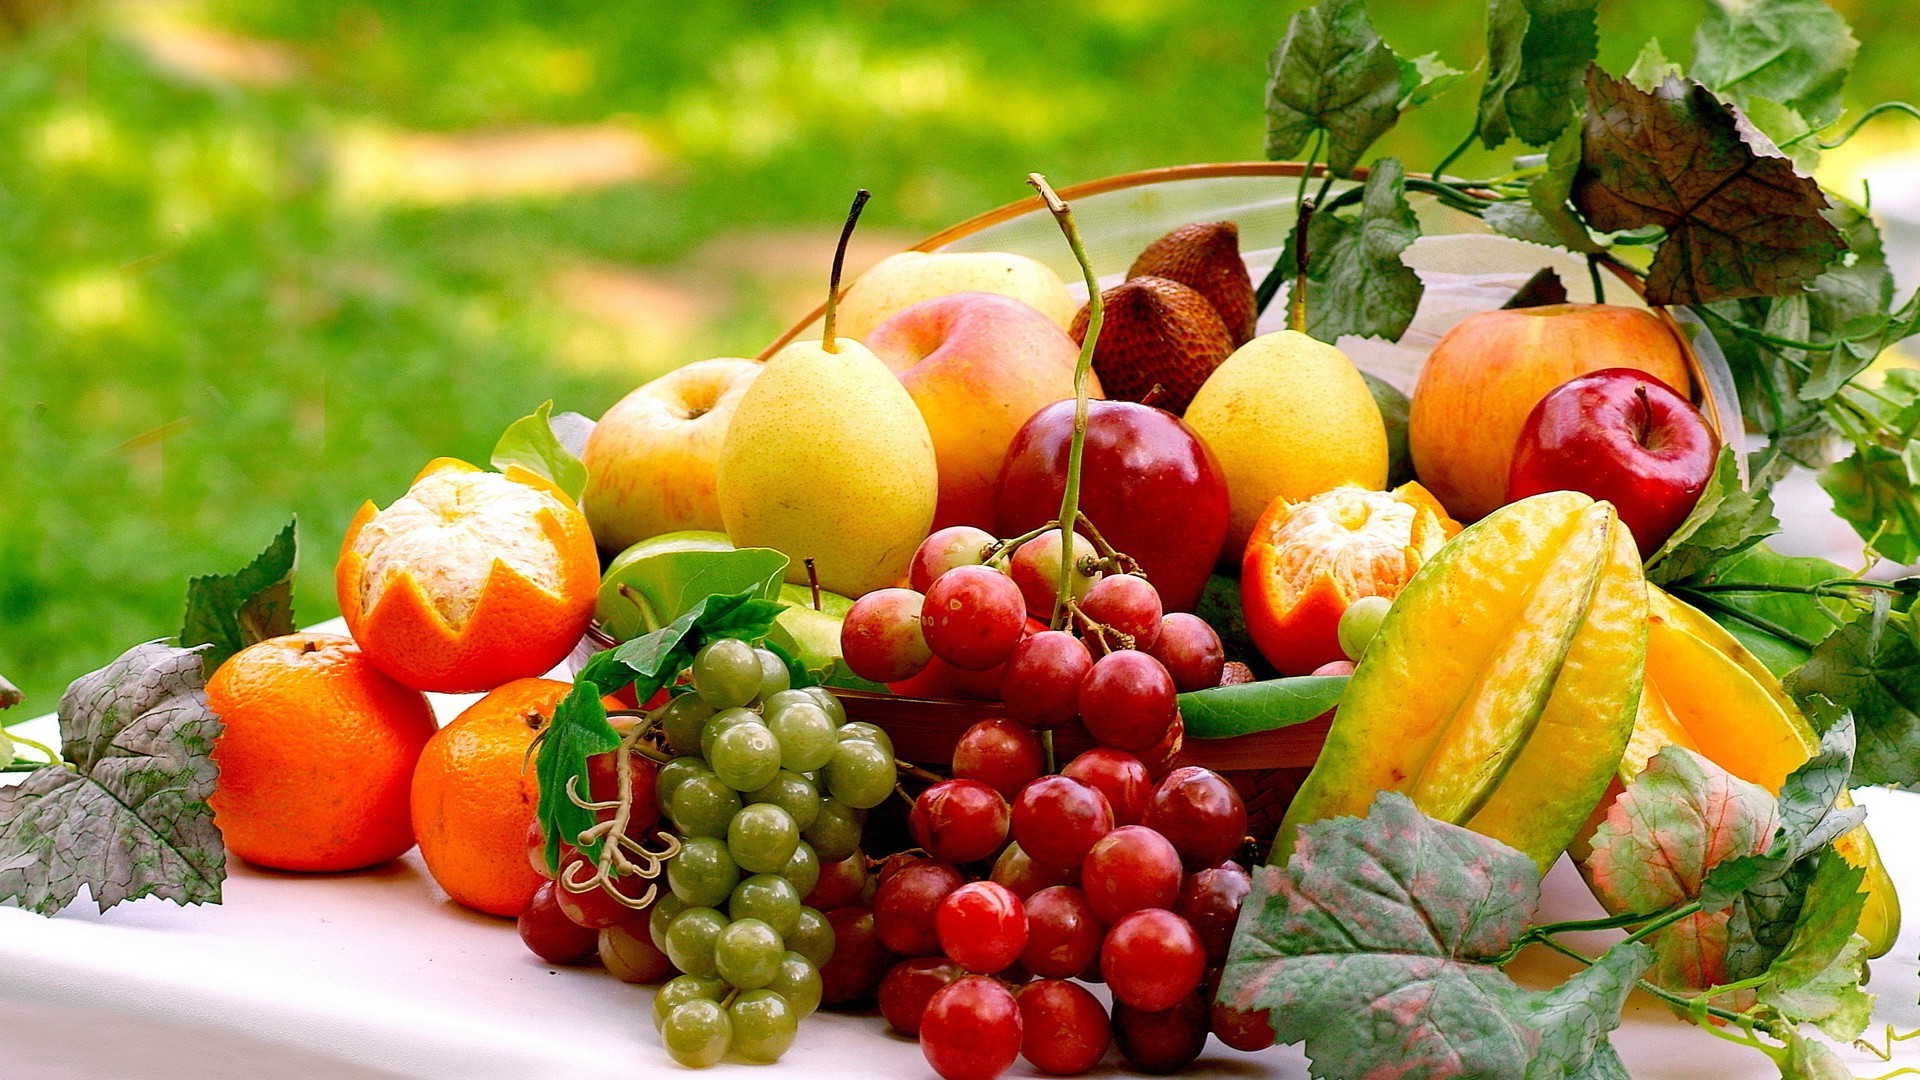 栄養壁紙,自然食品,地元の食べ物,食物,フルーツ,野菜